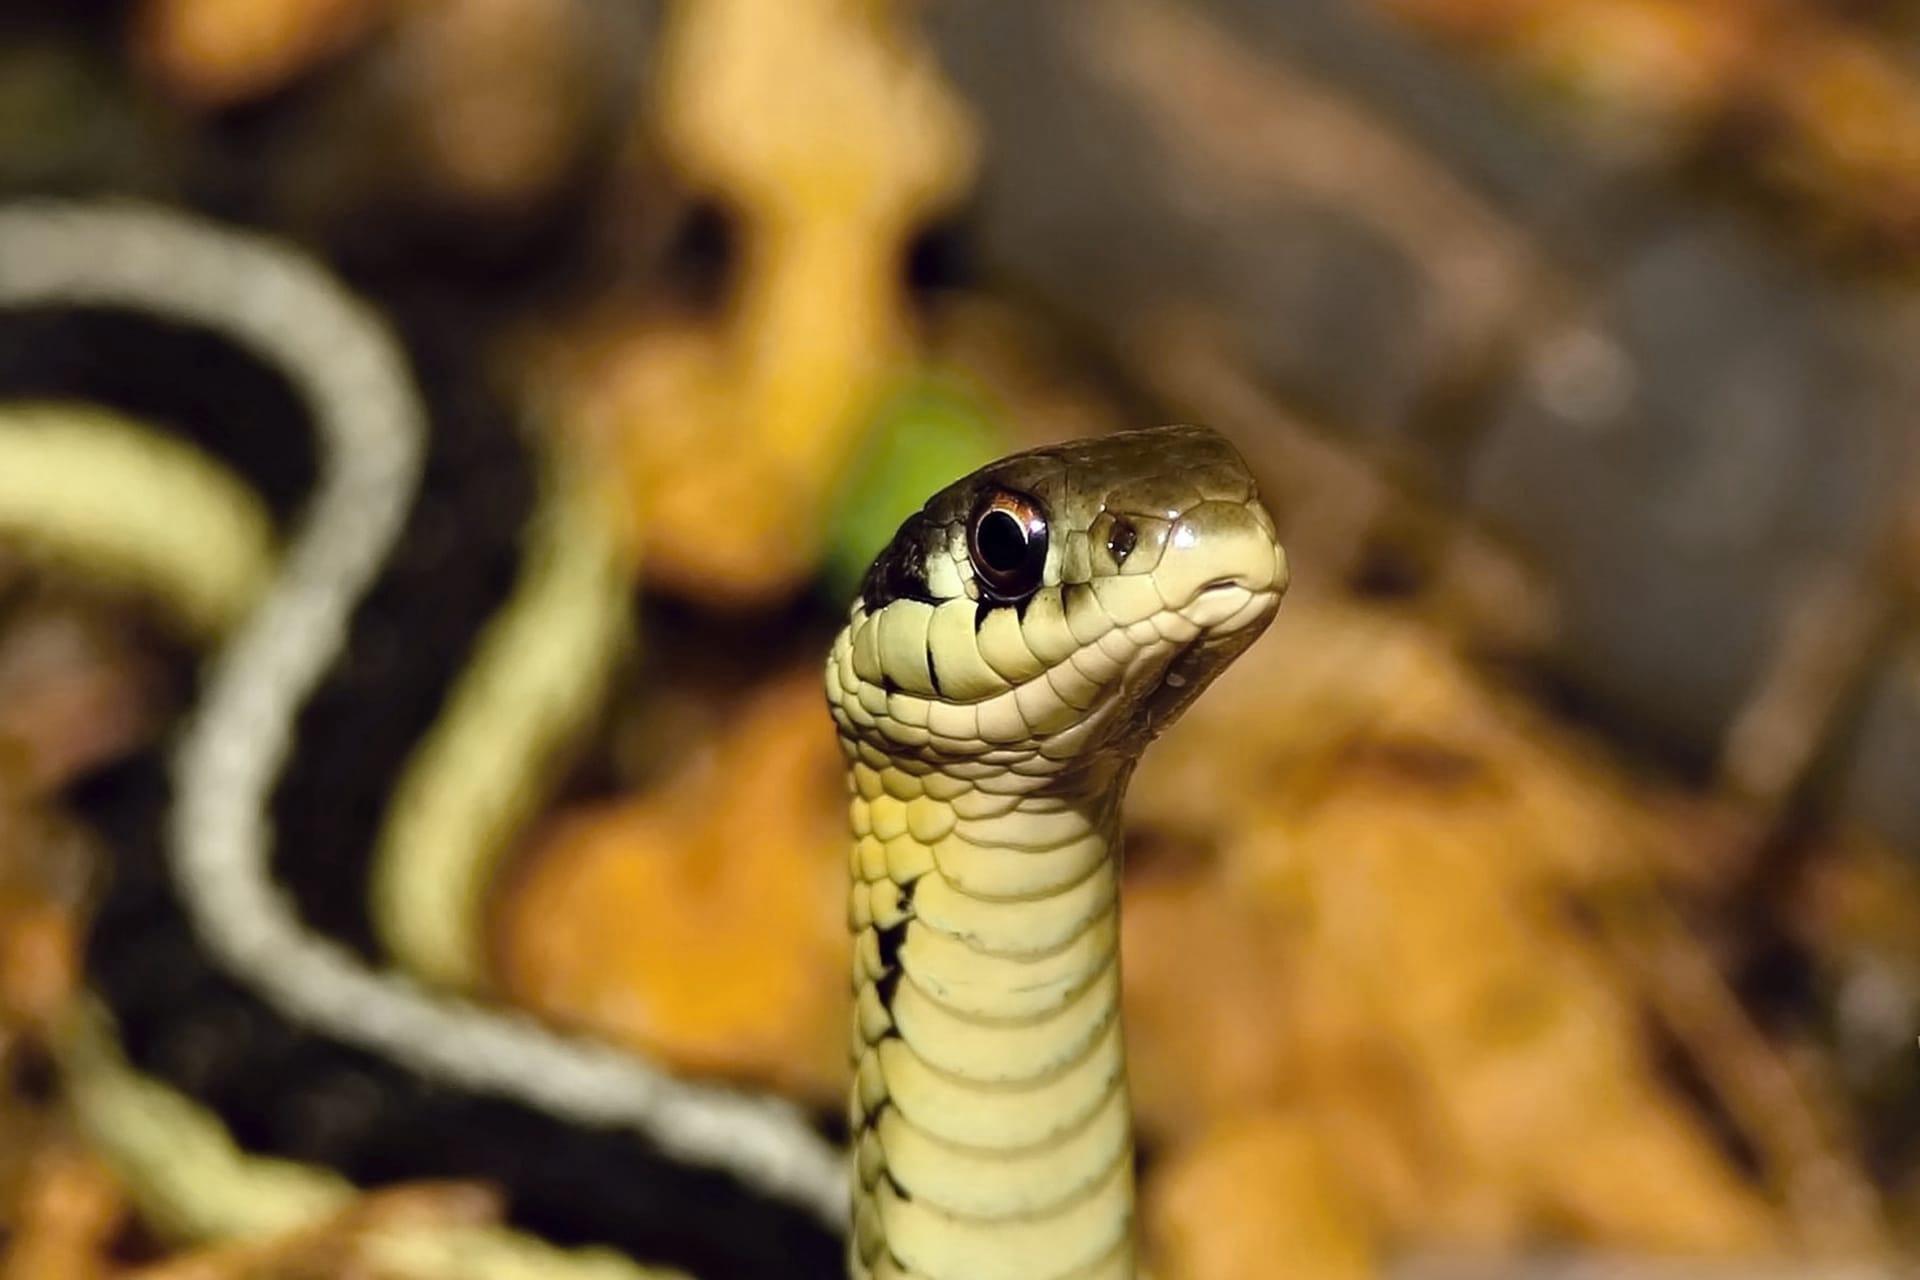 Garter snake pictures